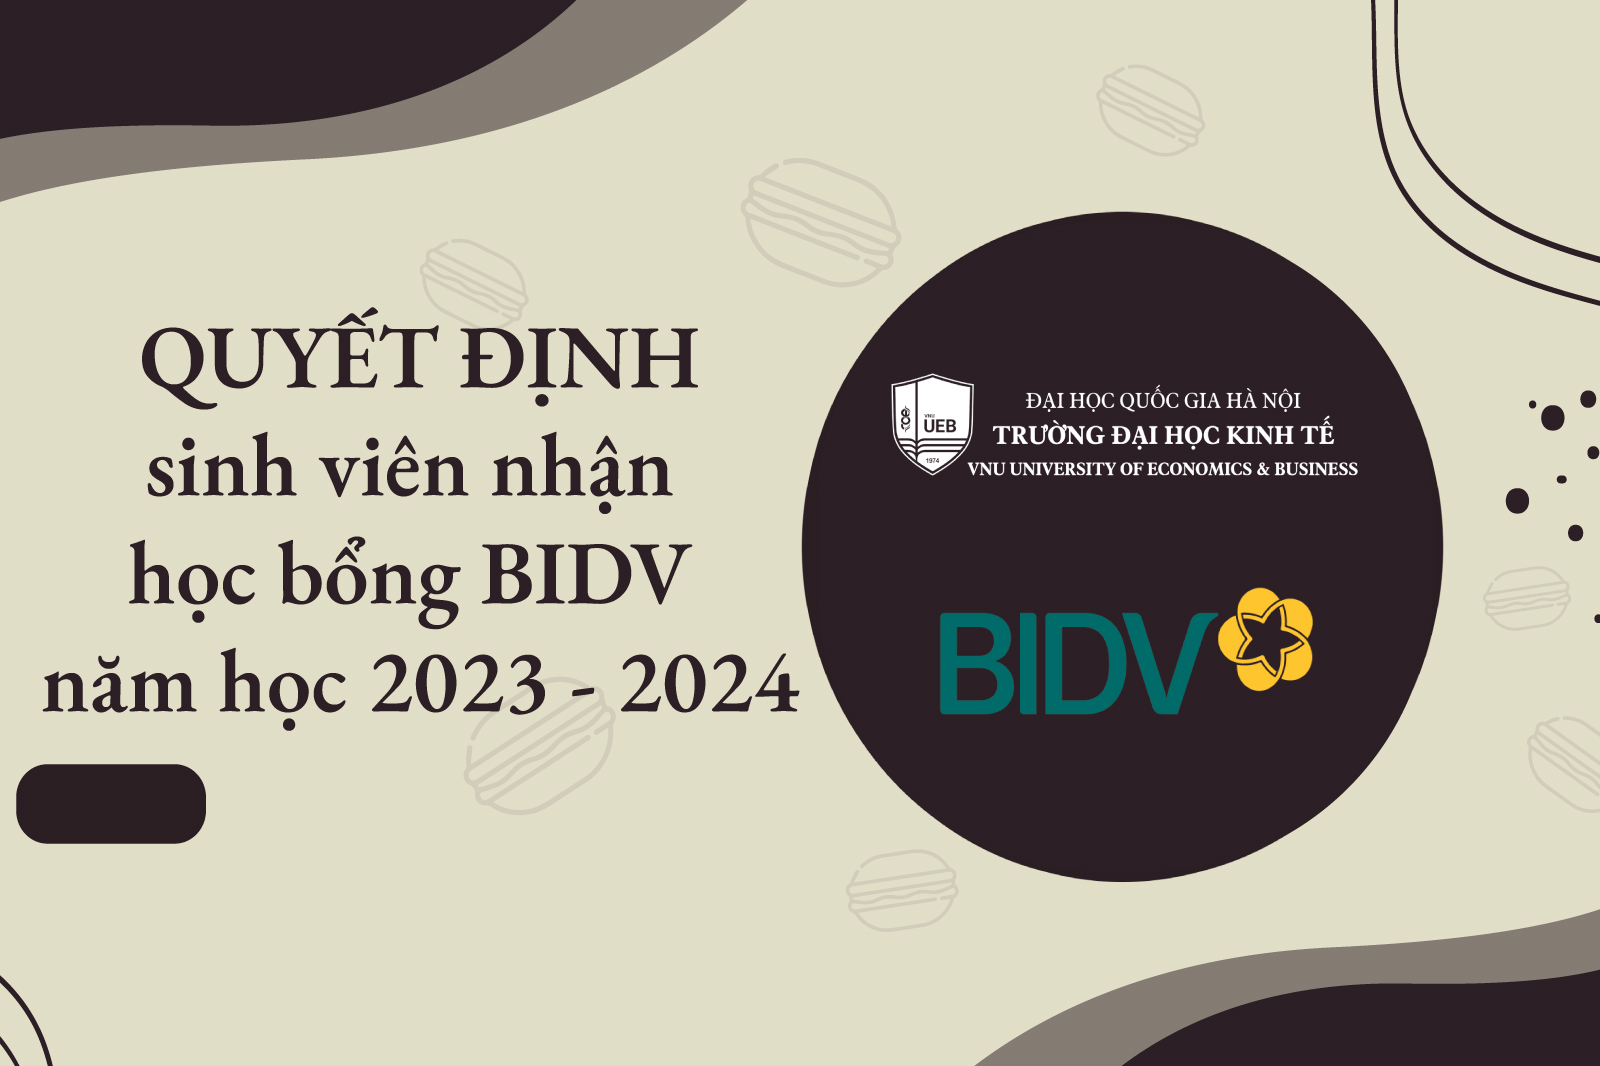 Quyết định sinh viên nhận học bổng BIDV năm học 2023 - 2024